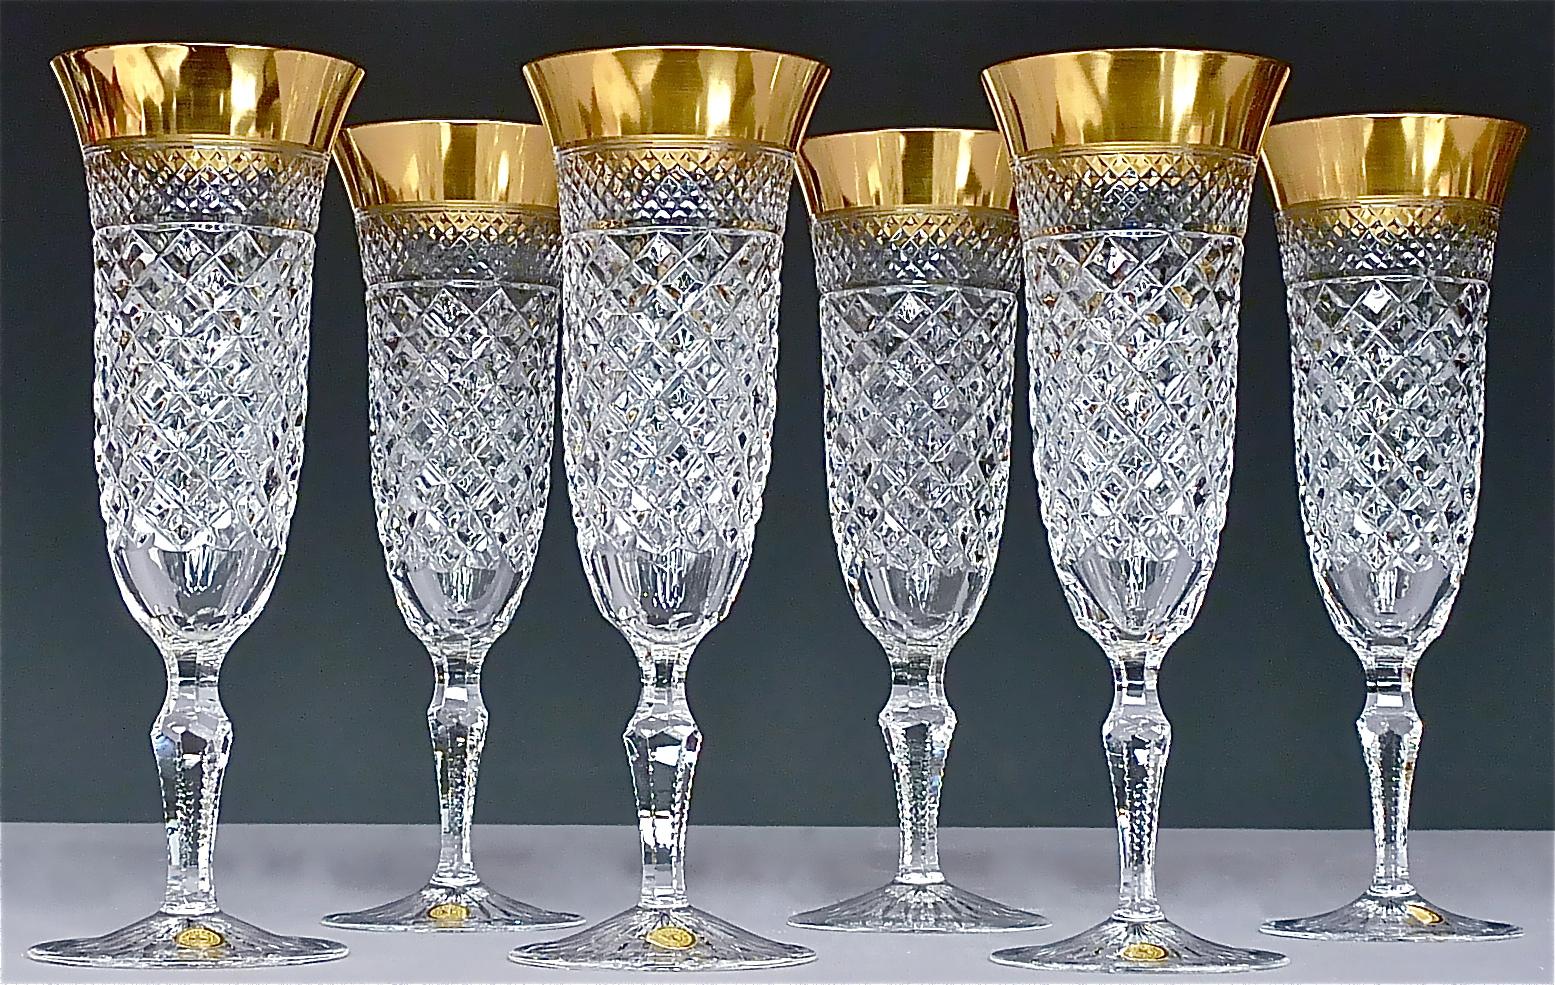 Wunderschönes, handgefertigtes, facettiertes Kristallglas des 20. Jahrhunderts mit 24 Karat Goldrand, hergestellt von der Josephinenhütte Moser um 1960-1970 und ganz im Stil der exklusiven französischen Firma Baccarat oder Saint Louis Distel. Dieses